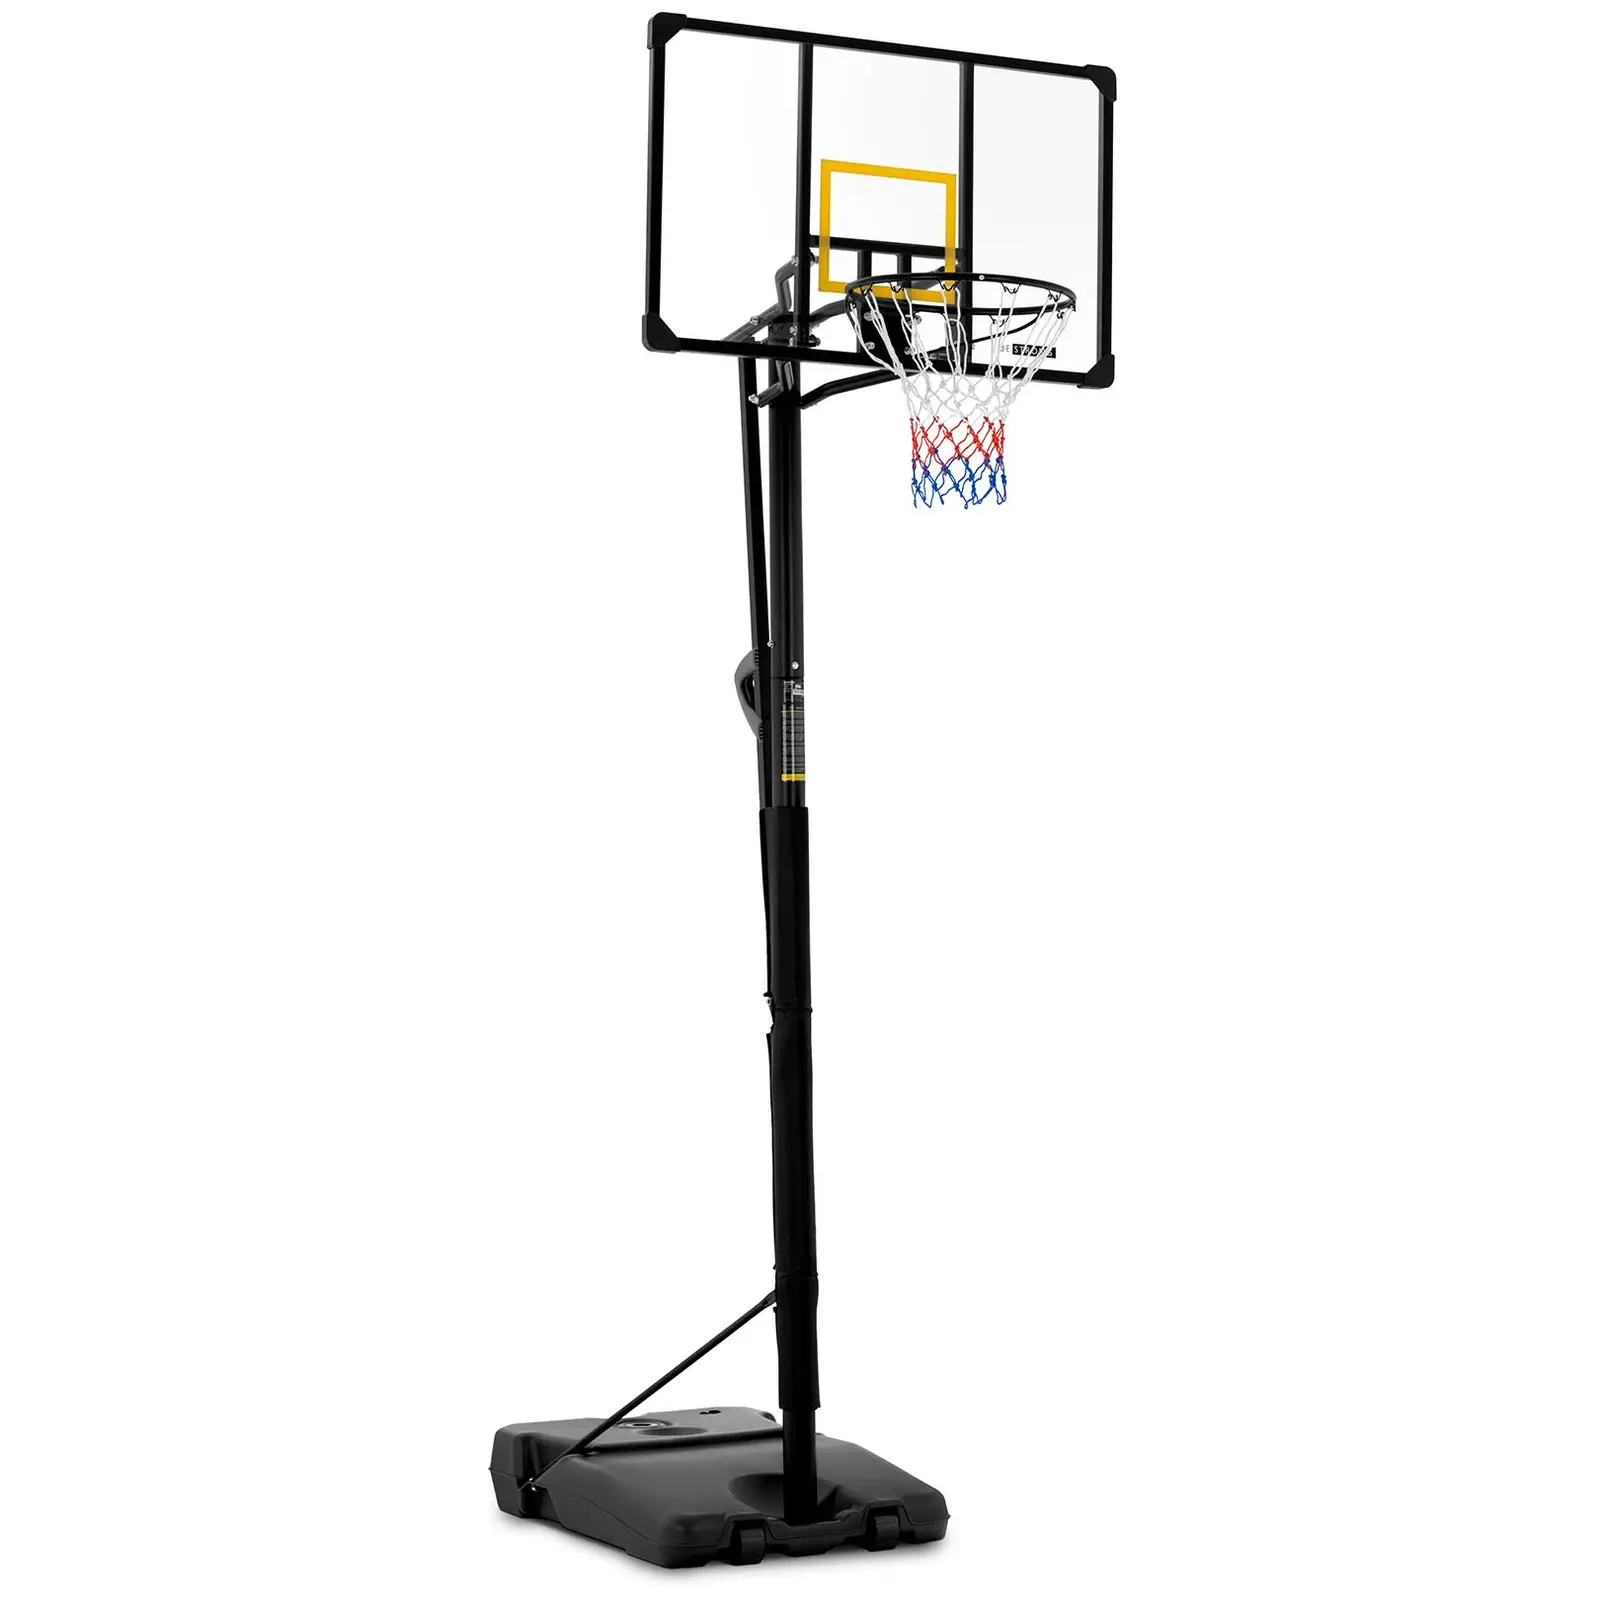 Tabela de basquetebol - suporte - 230-305 cm